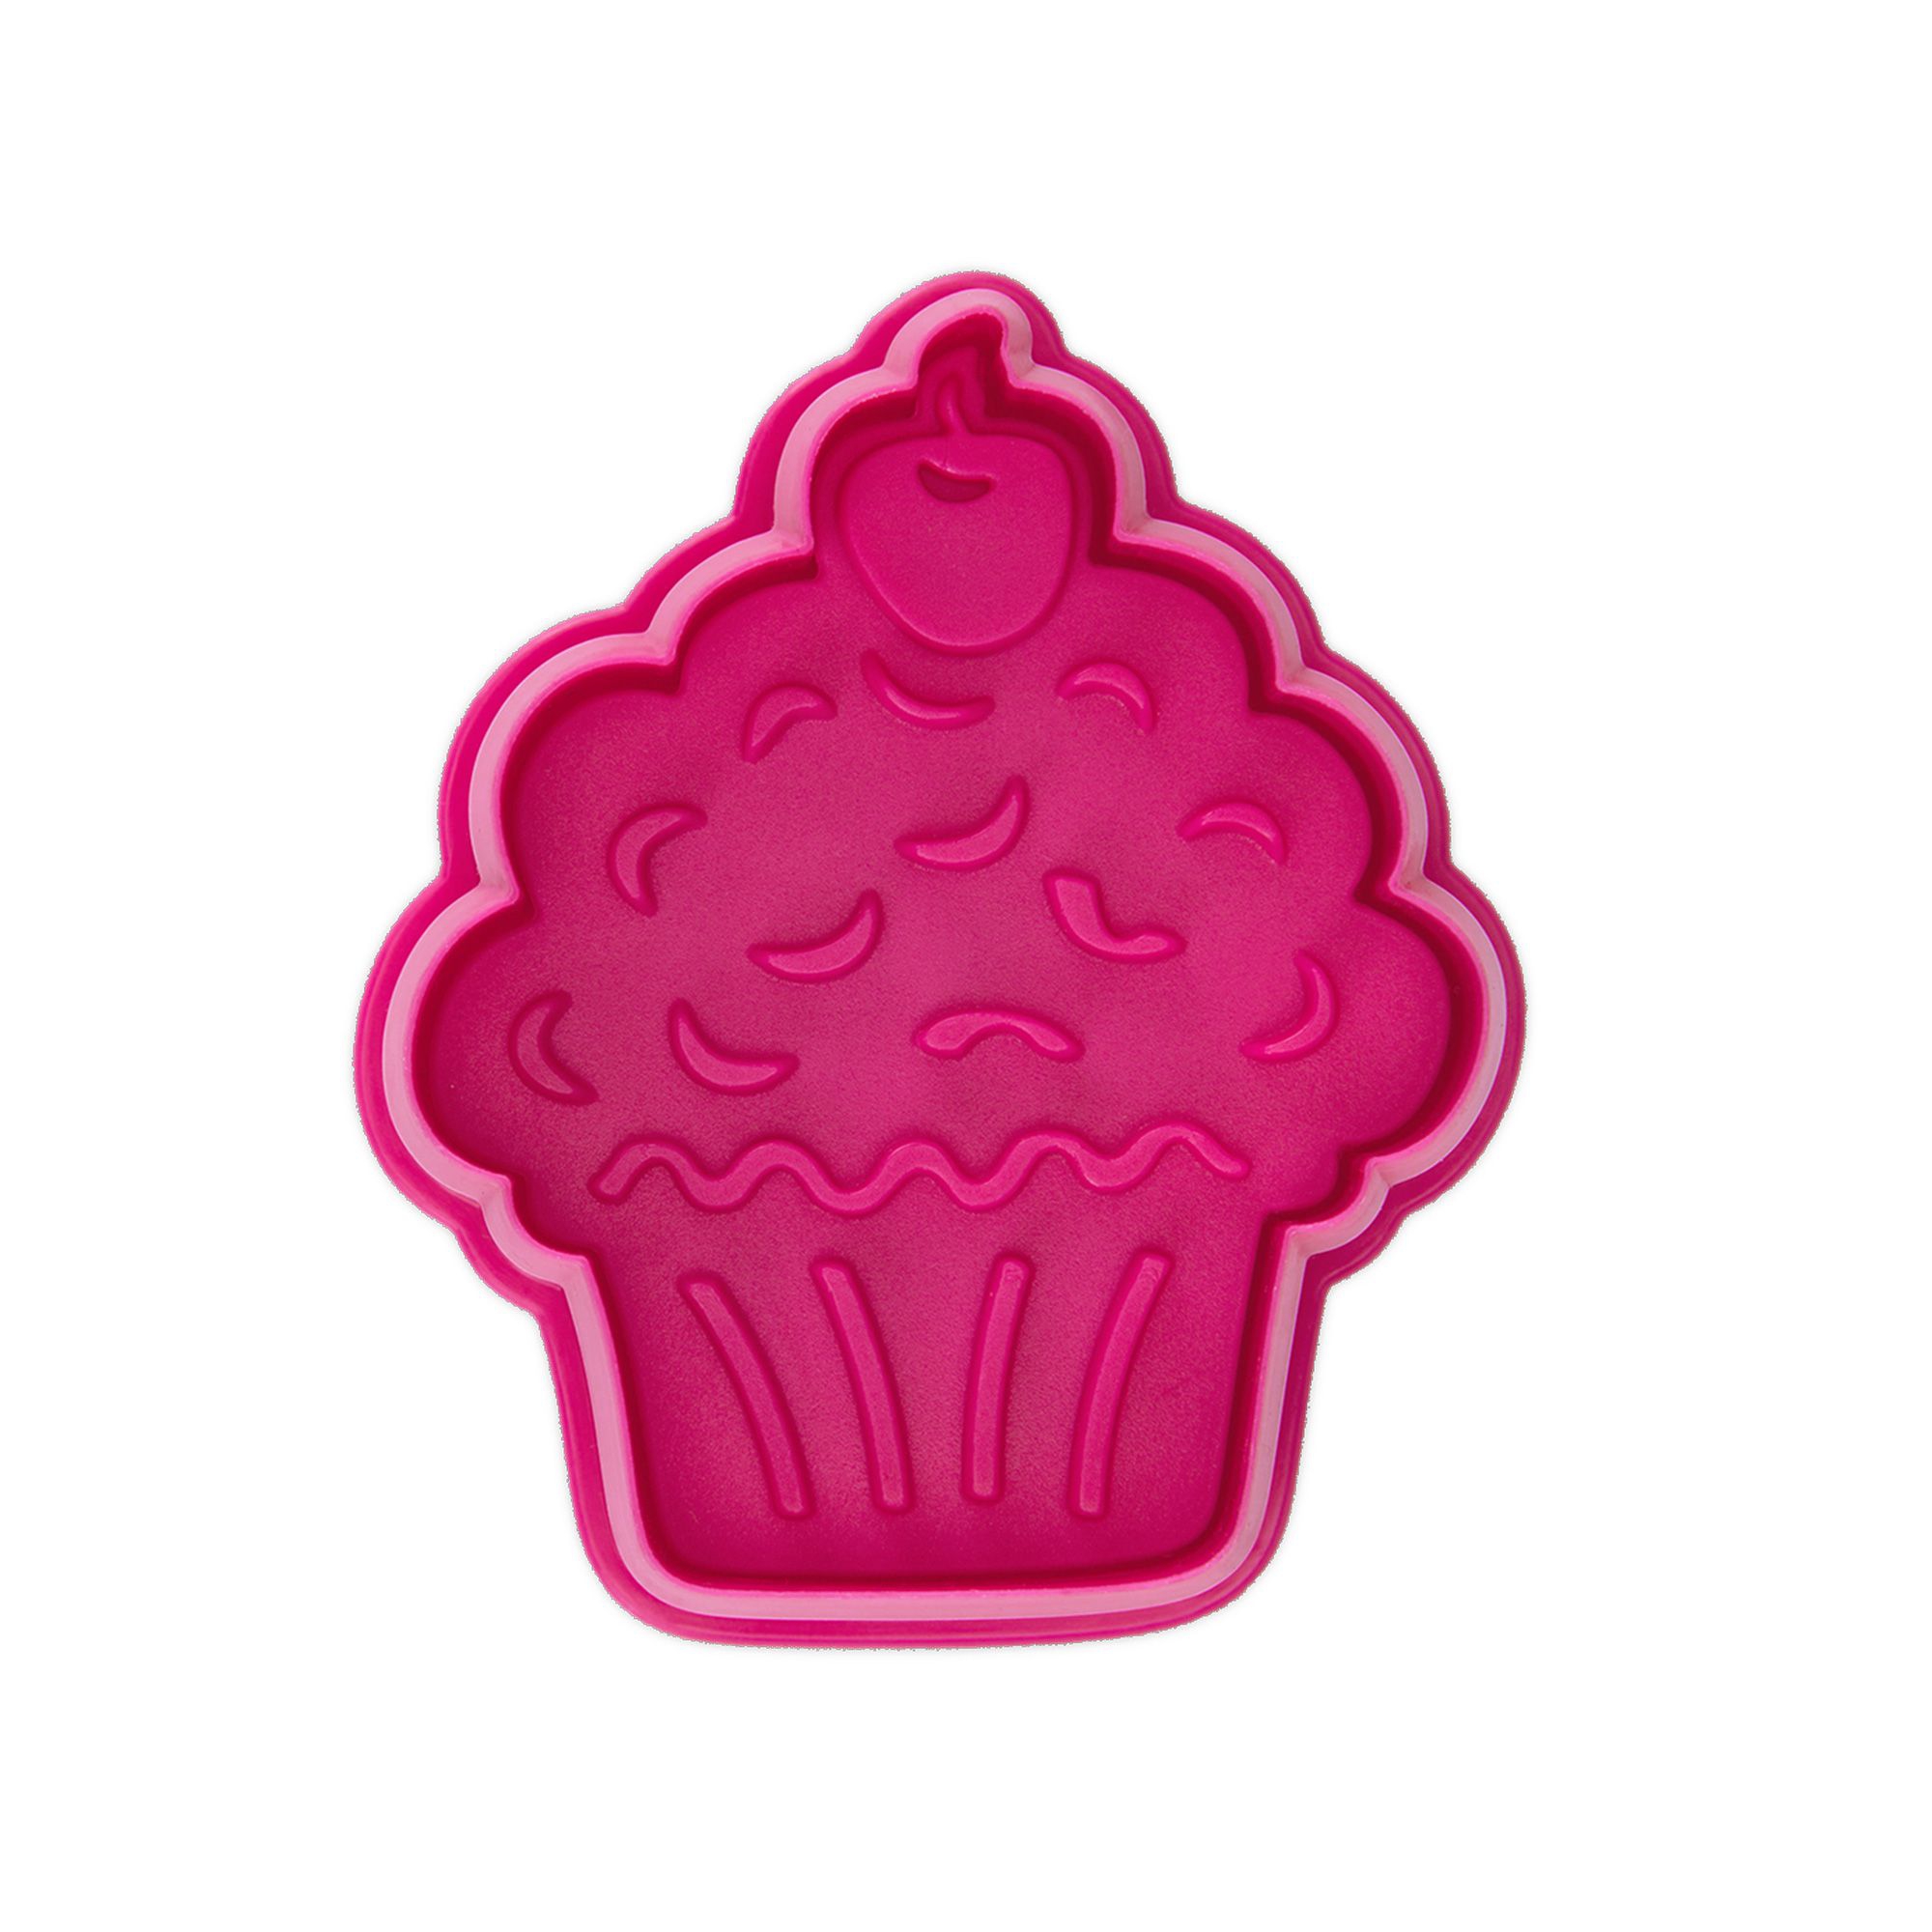 Städter - cookie cutter muffin 6 cm - pink